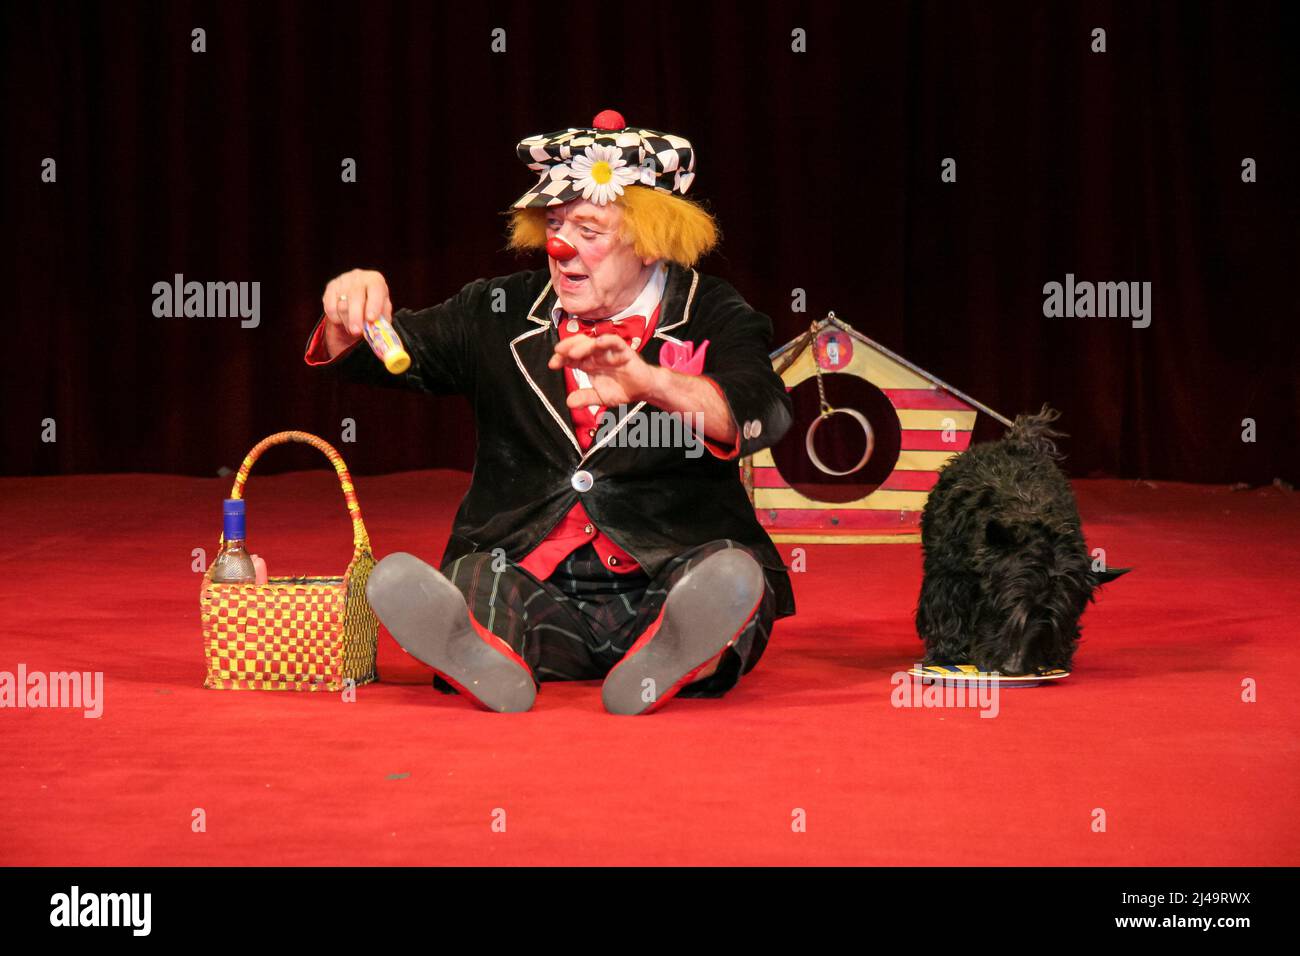 Oleg Popov (1930-2016), berühmter russischer Clown, Pantomime- und Zirkuskünstler, tritt in Iwanuschka-Kostüm mit seinem Hund im russischen Staatszirkus in Wetzlar auf. 13. März 2008. Kredit: Christian Lademann / LademannMedia Stockfoto